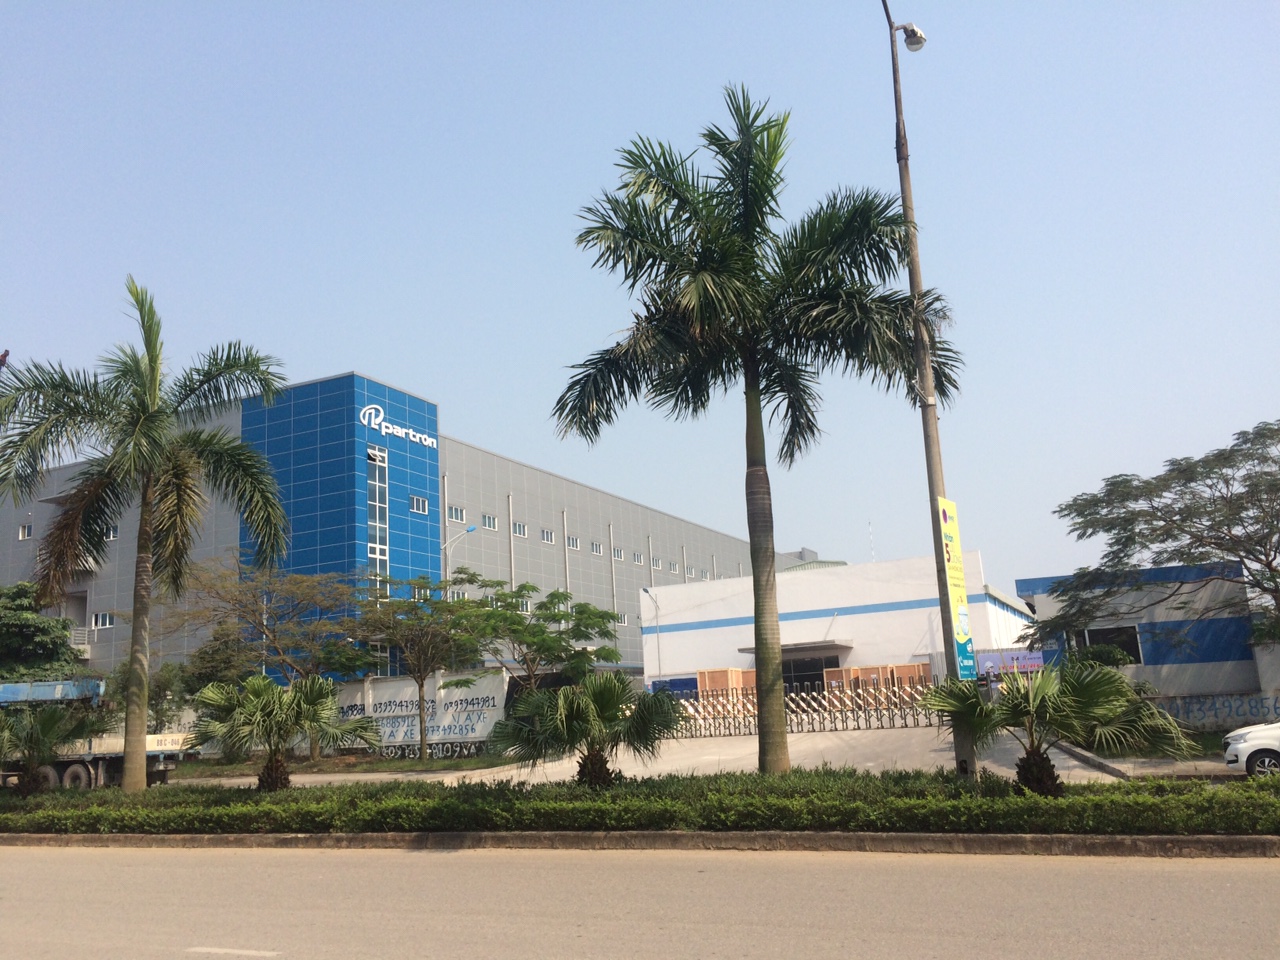 Hoàn thành lắp đặt hệ thống camera giám sát tại Công ty TNHH Partron Vina- Lô 11- KCN Khai Quang- TP.Vĩnh Yên- T.Vĩnh Phúc